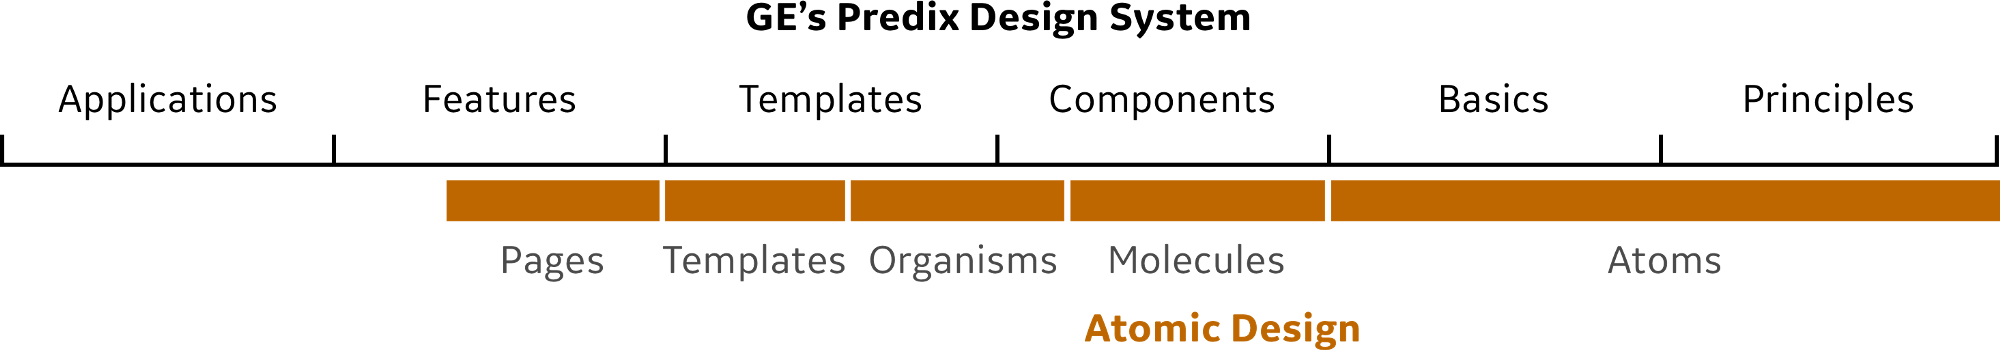 Predix Design System vs Atomic Design